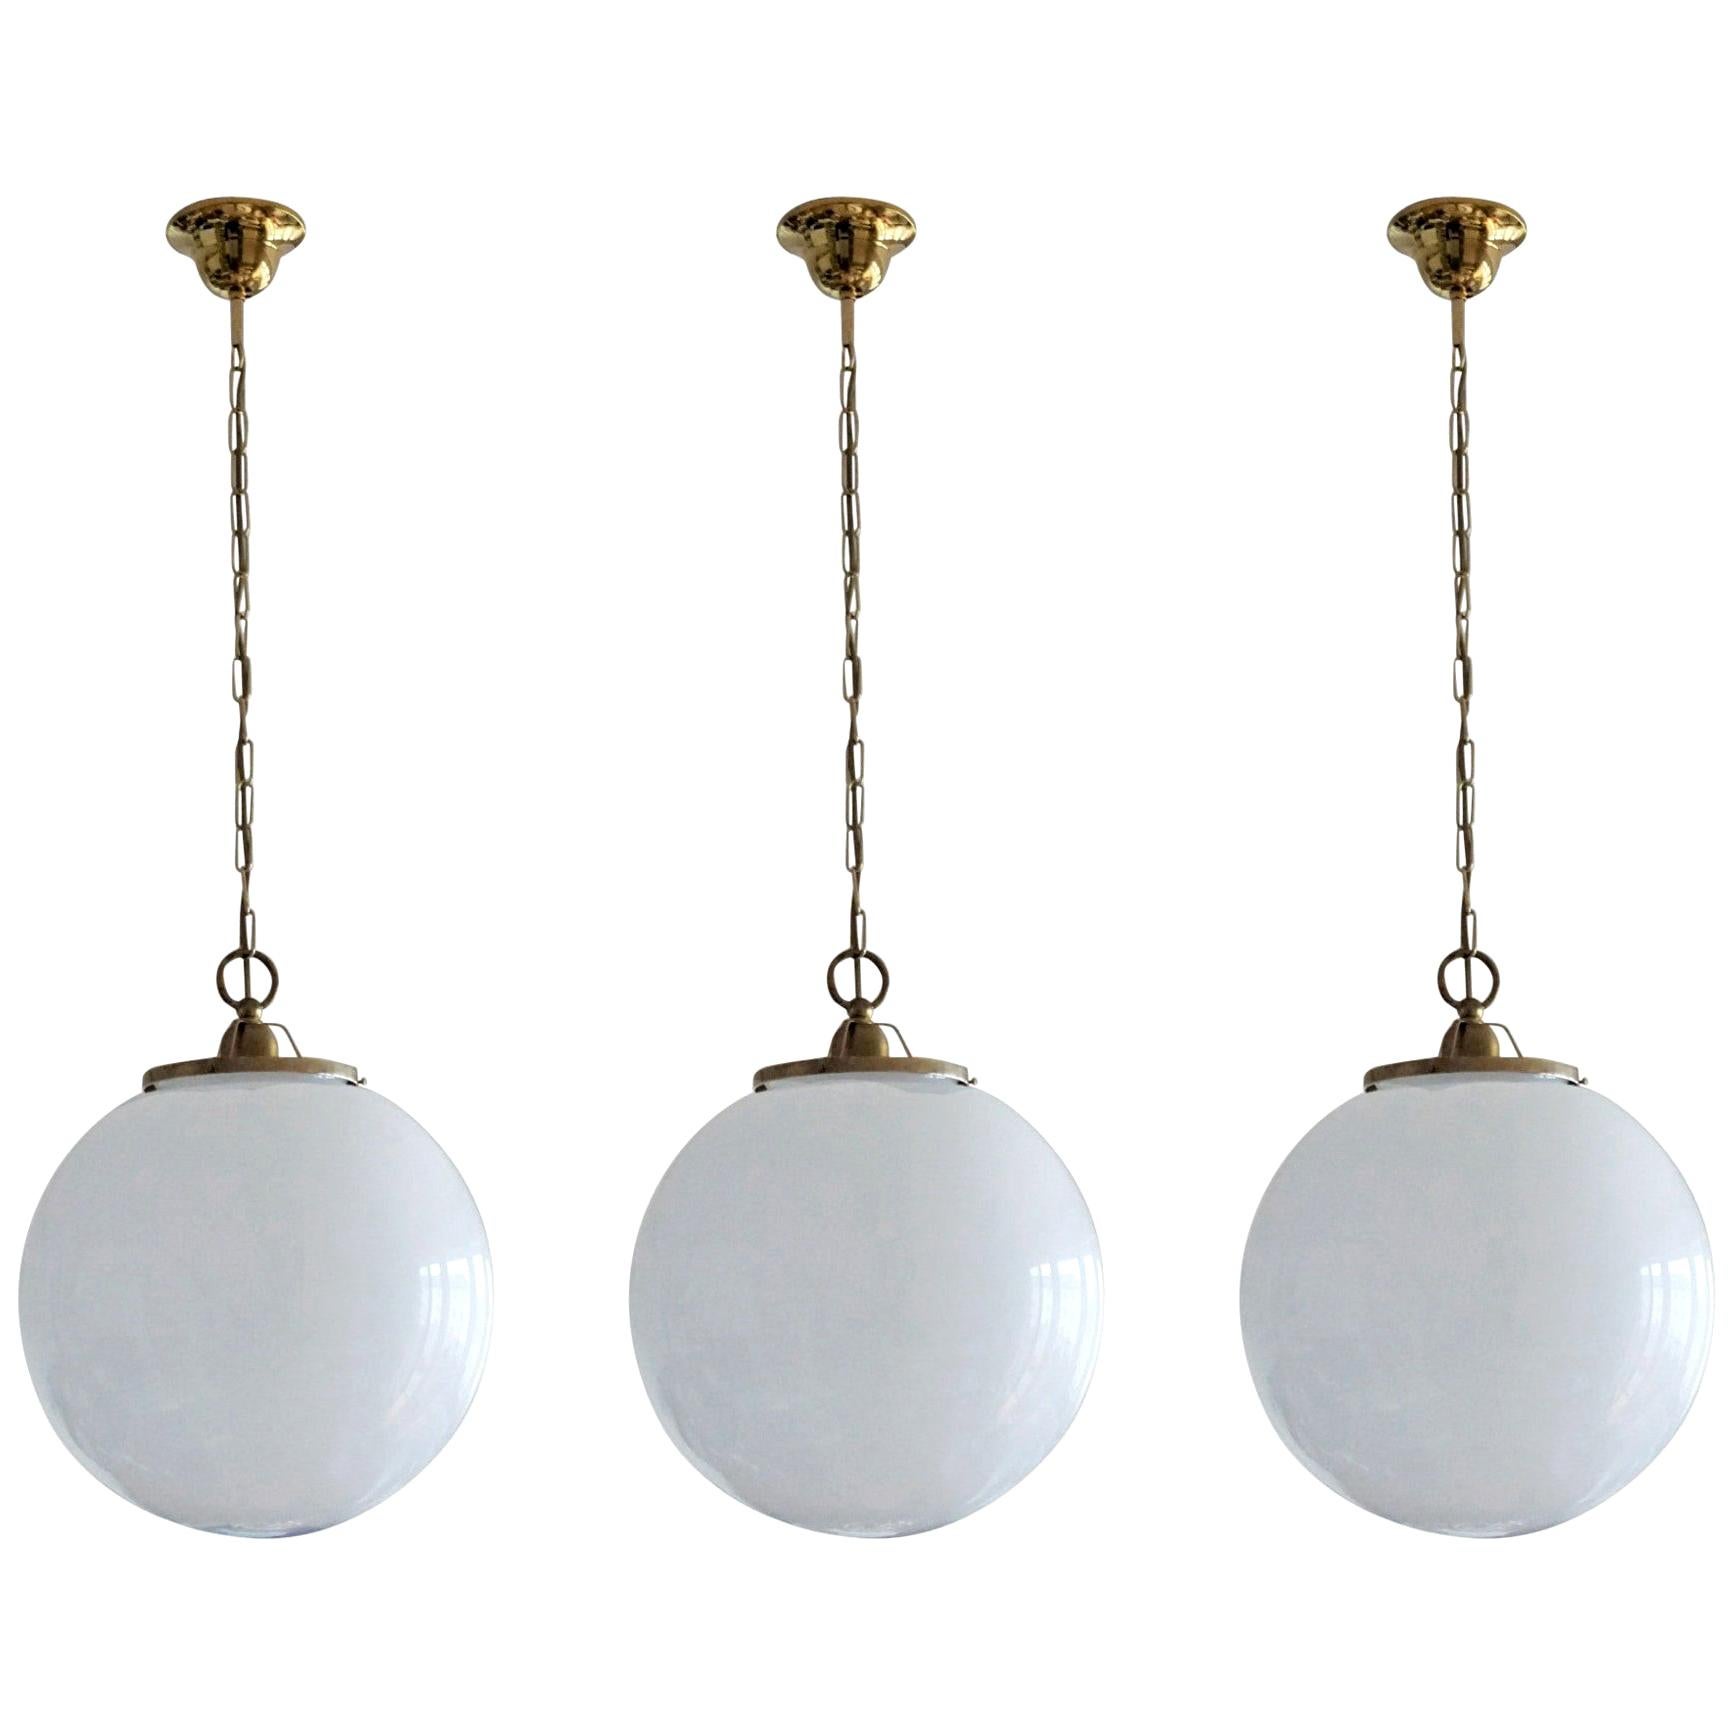 Satz von drei großen italienischen Kugelanhängern aus mundgeblasenem Opalglas, messingmontiert, mit einer einzigen E-27 Fassung für eine große Glühbirne, 1950er Jahre
Maße: Durchmesser 14